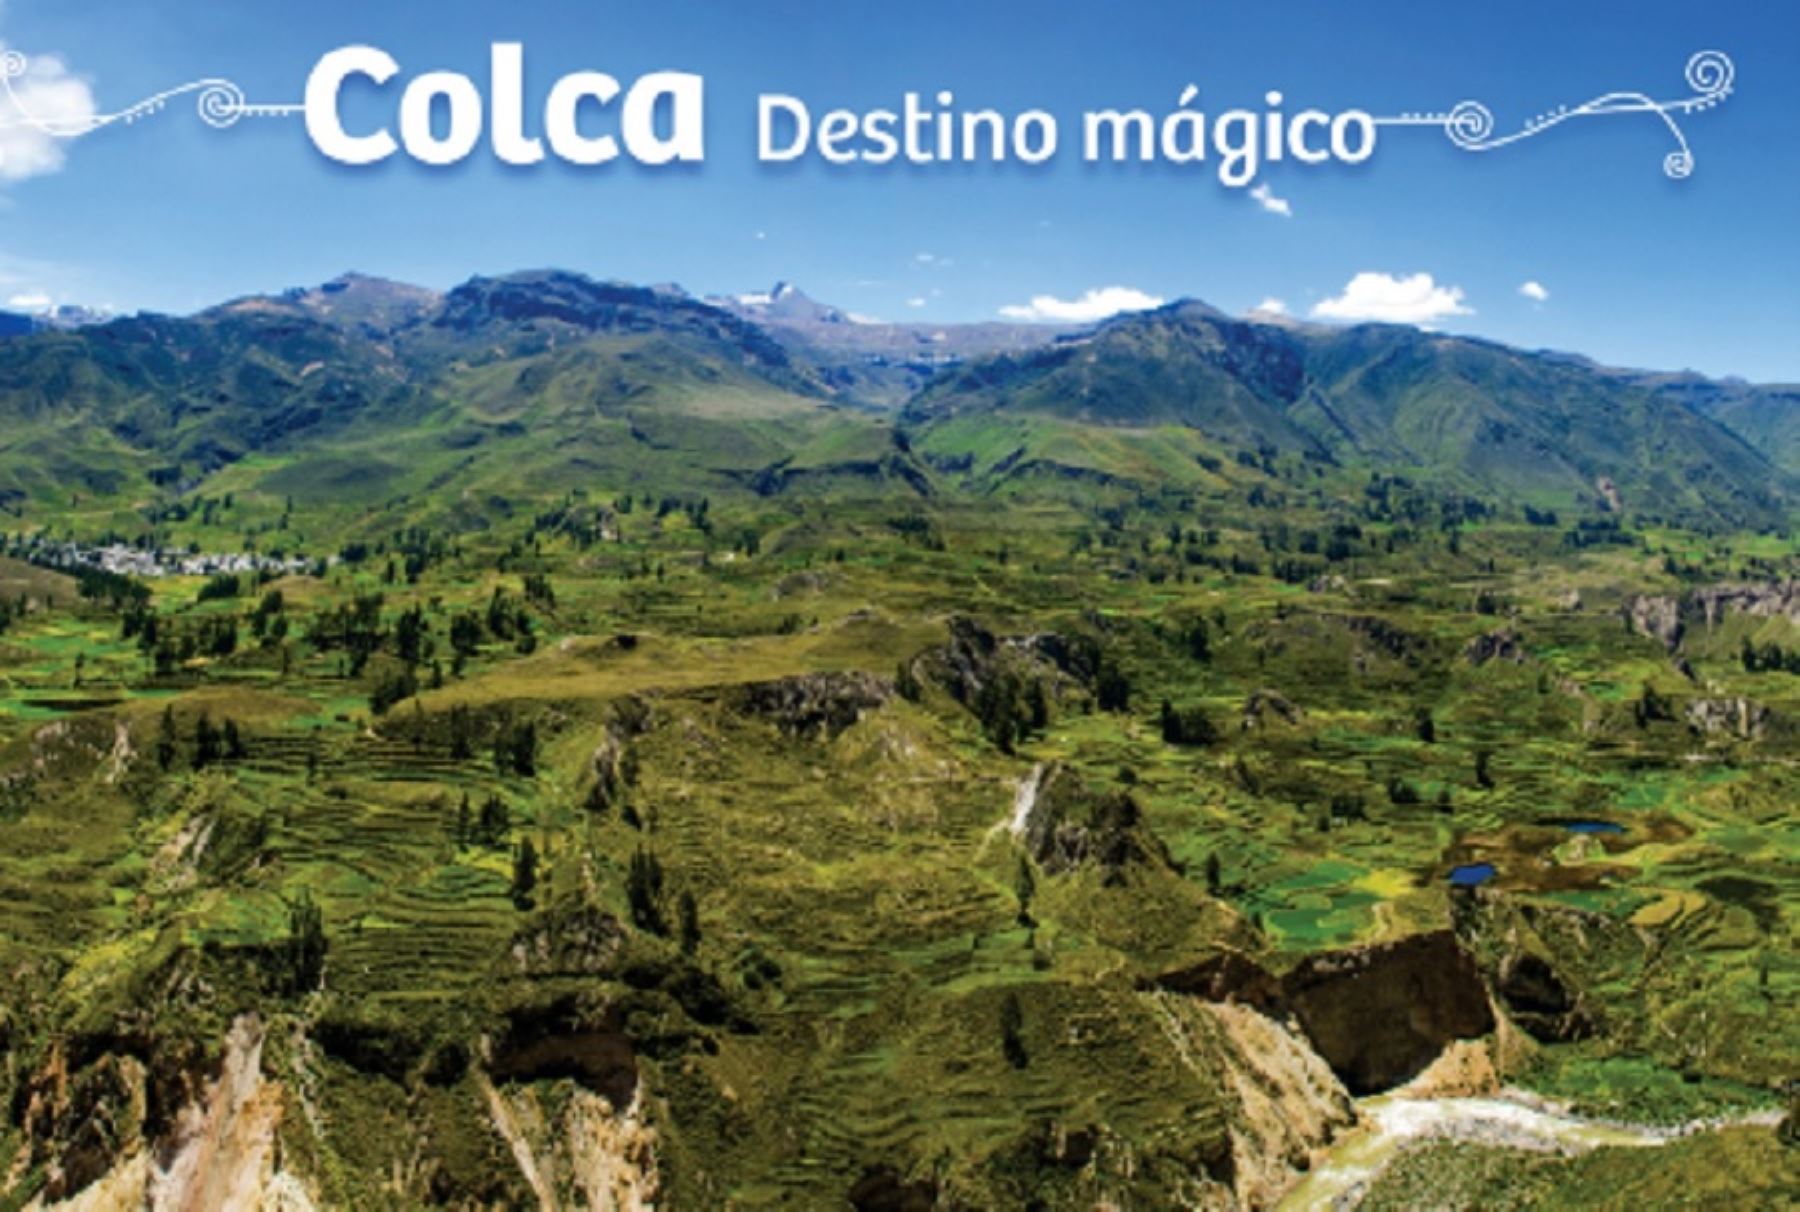 Valle y Cañón del Colca, destino mágico en la región Arequipa. INTERNET/Medios